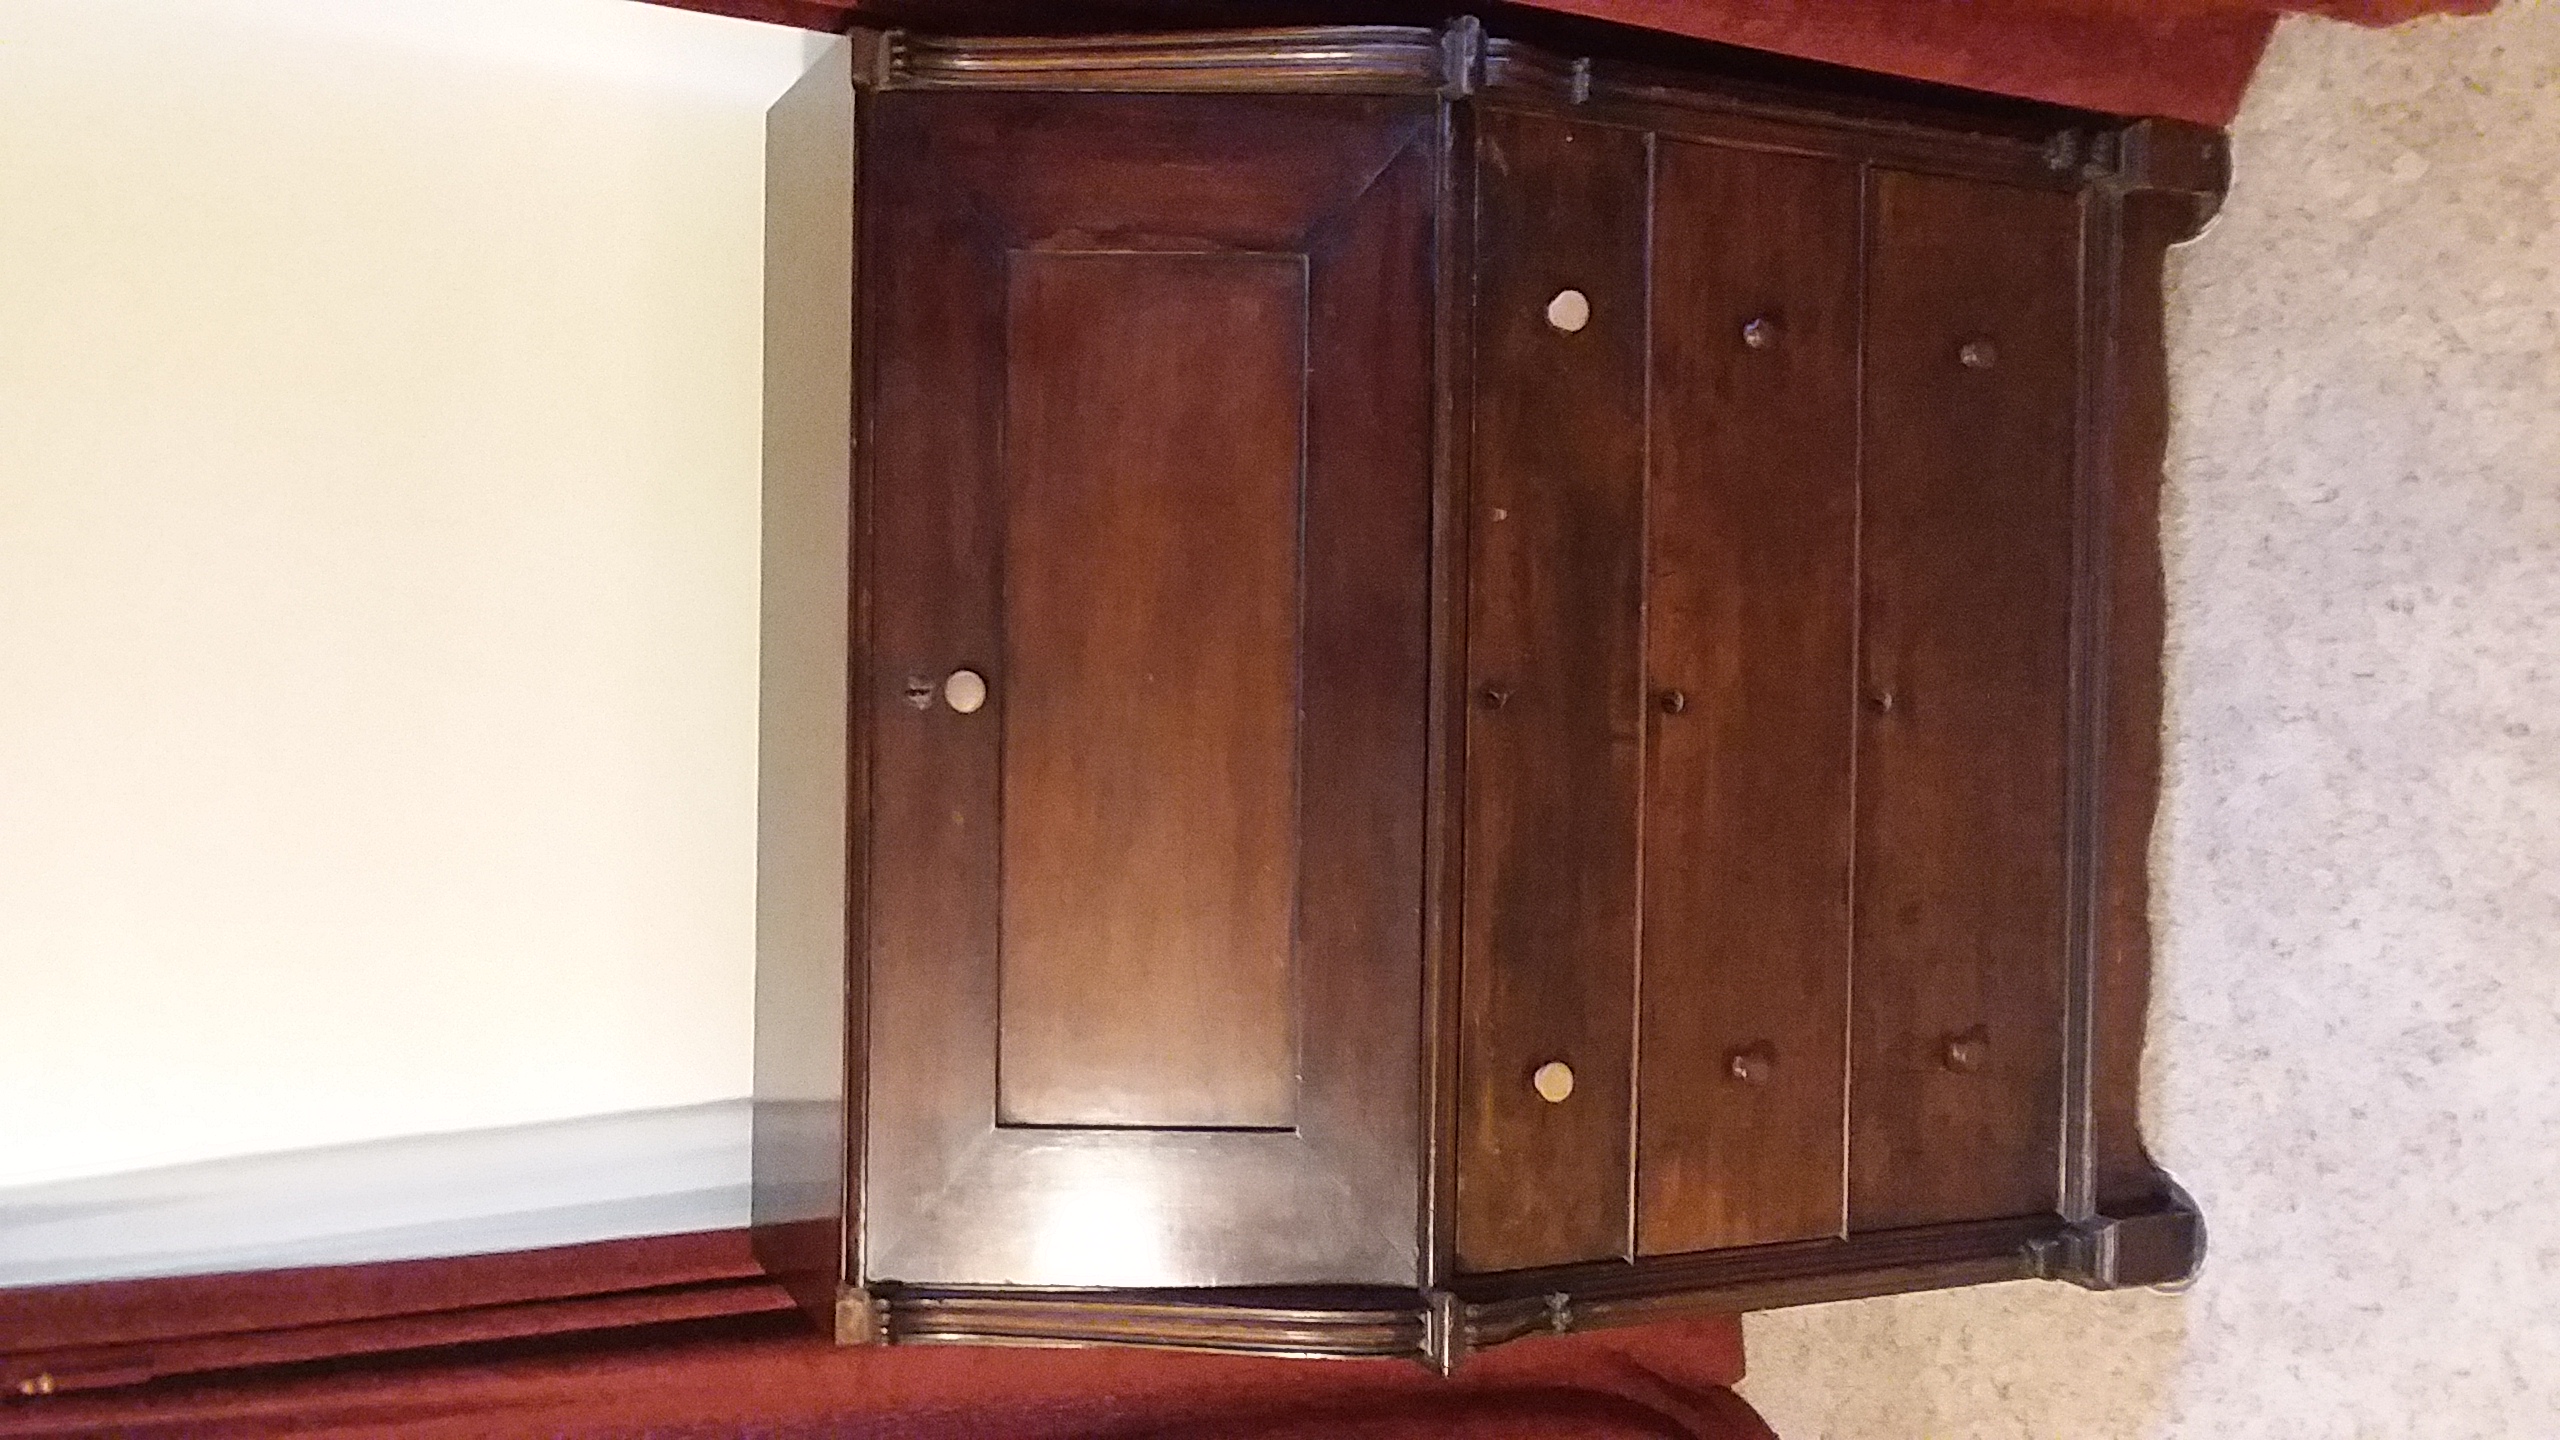 Antique slant (drop) front desk with hidden compartments For Sale ...